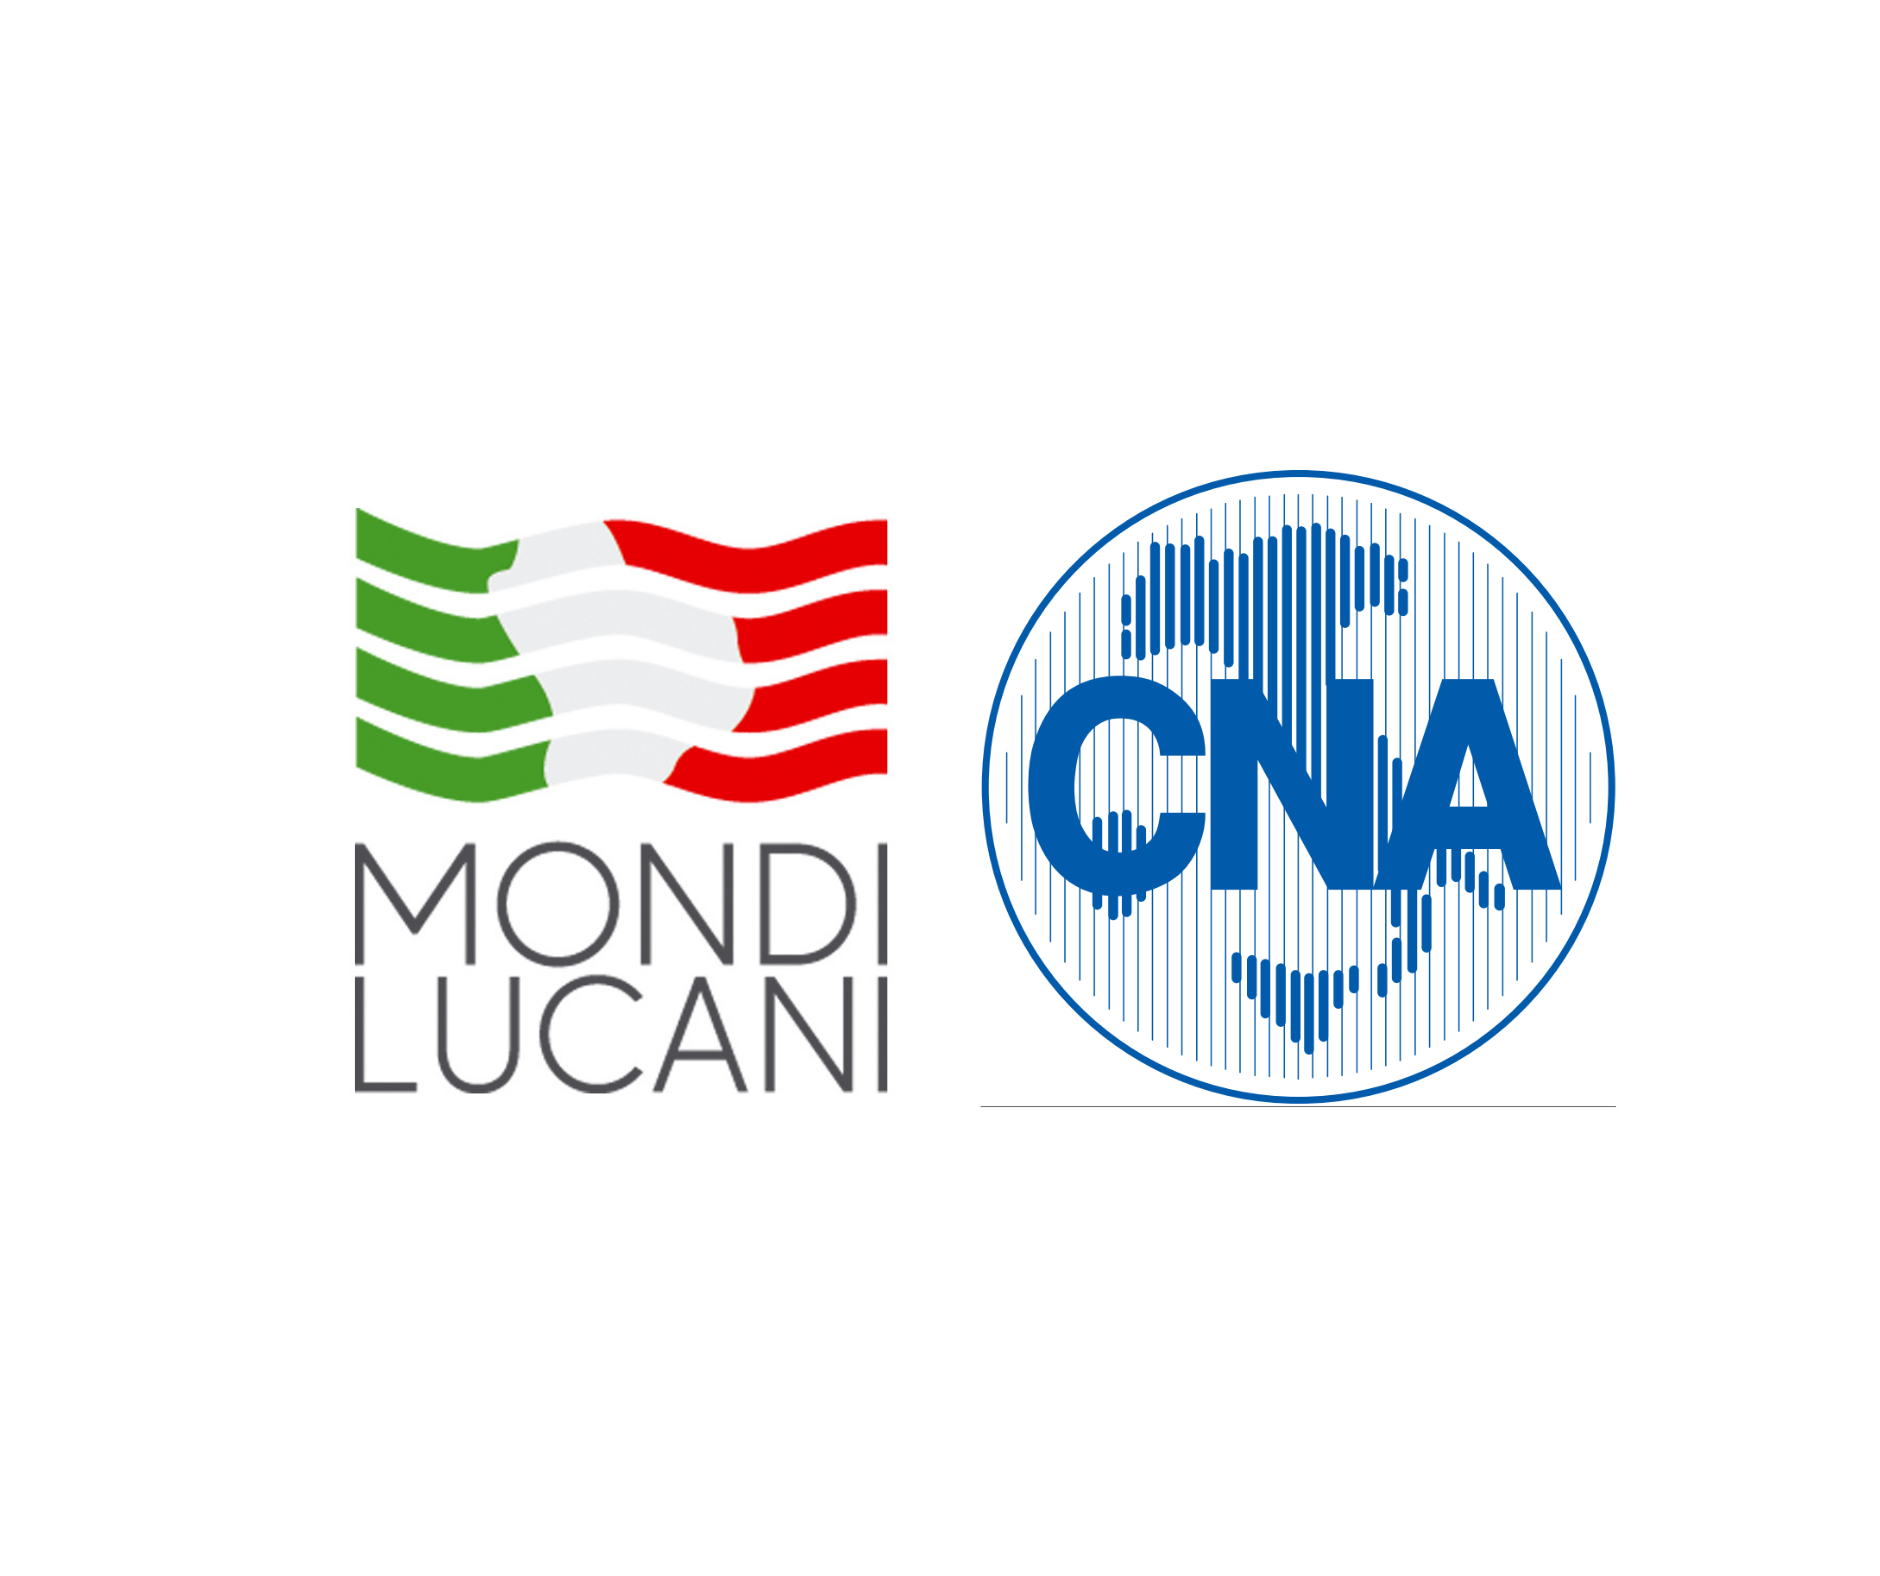 Mondi Lucani e CNA siglano protocollo d’intesa per creare “Connessioni” con i lucani nel mondo